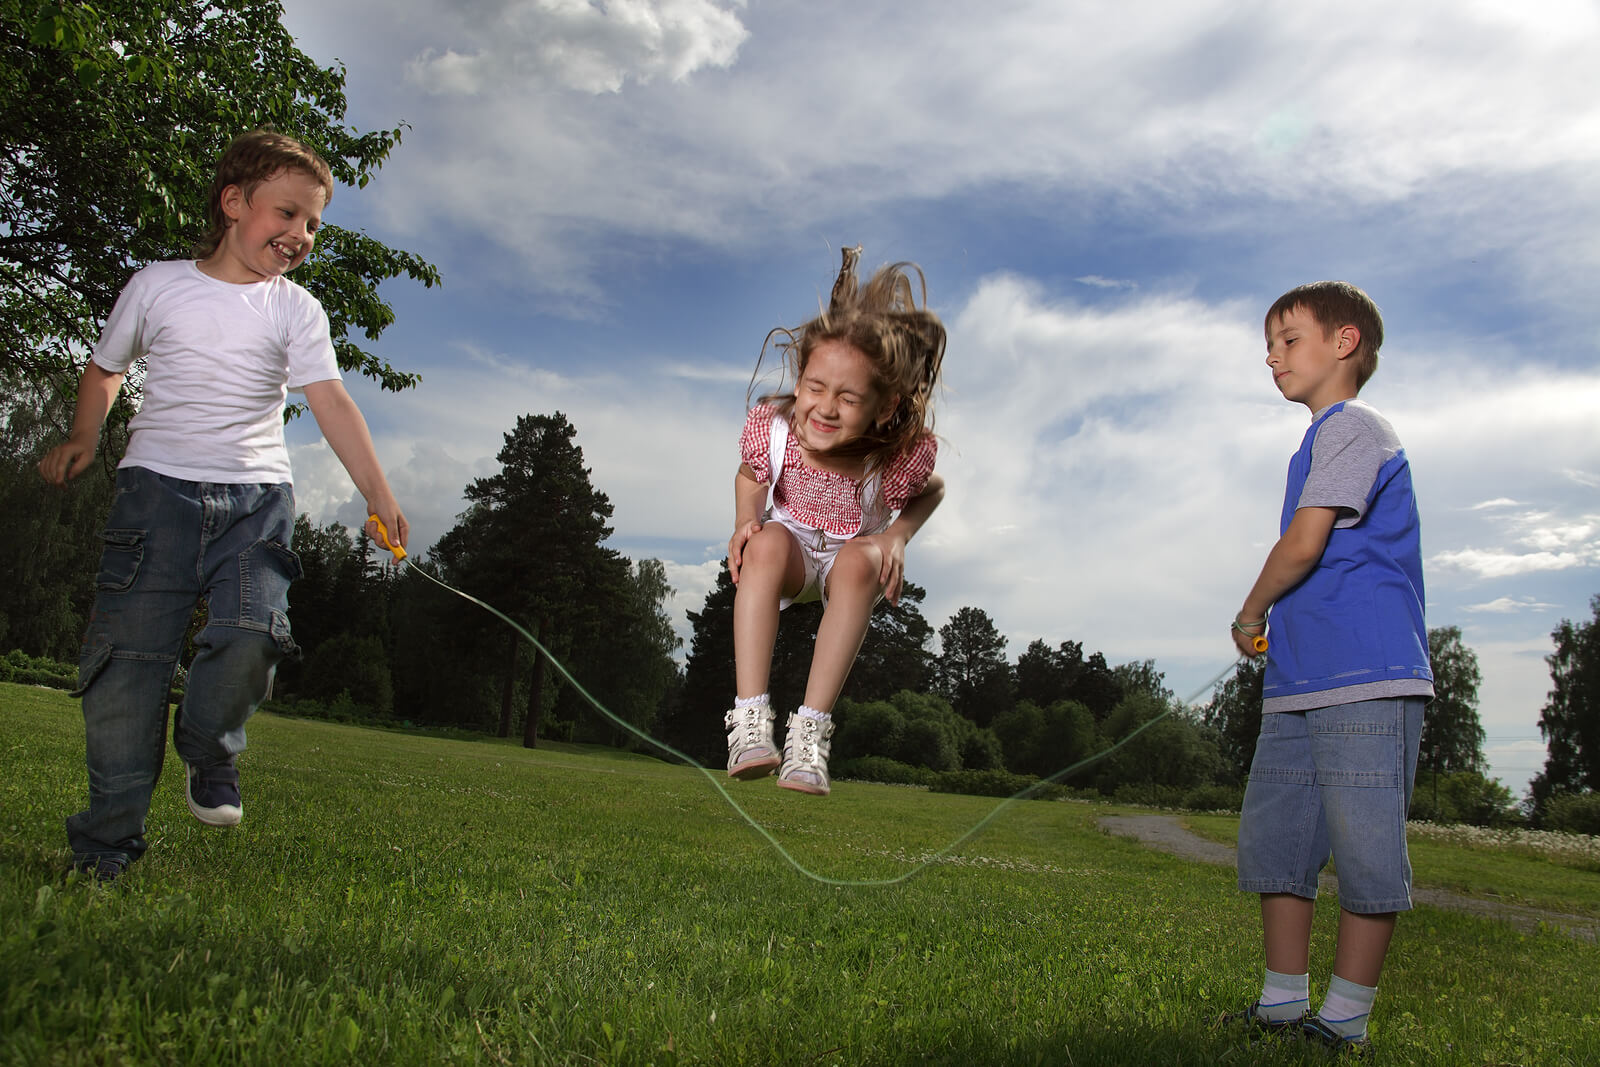 I bambini saltano la corda, una delle attività di movimento libero più facili da fare.